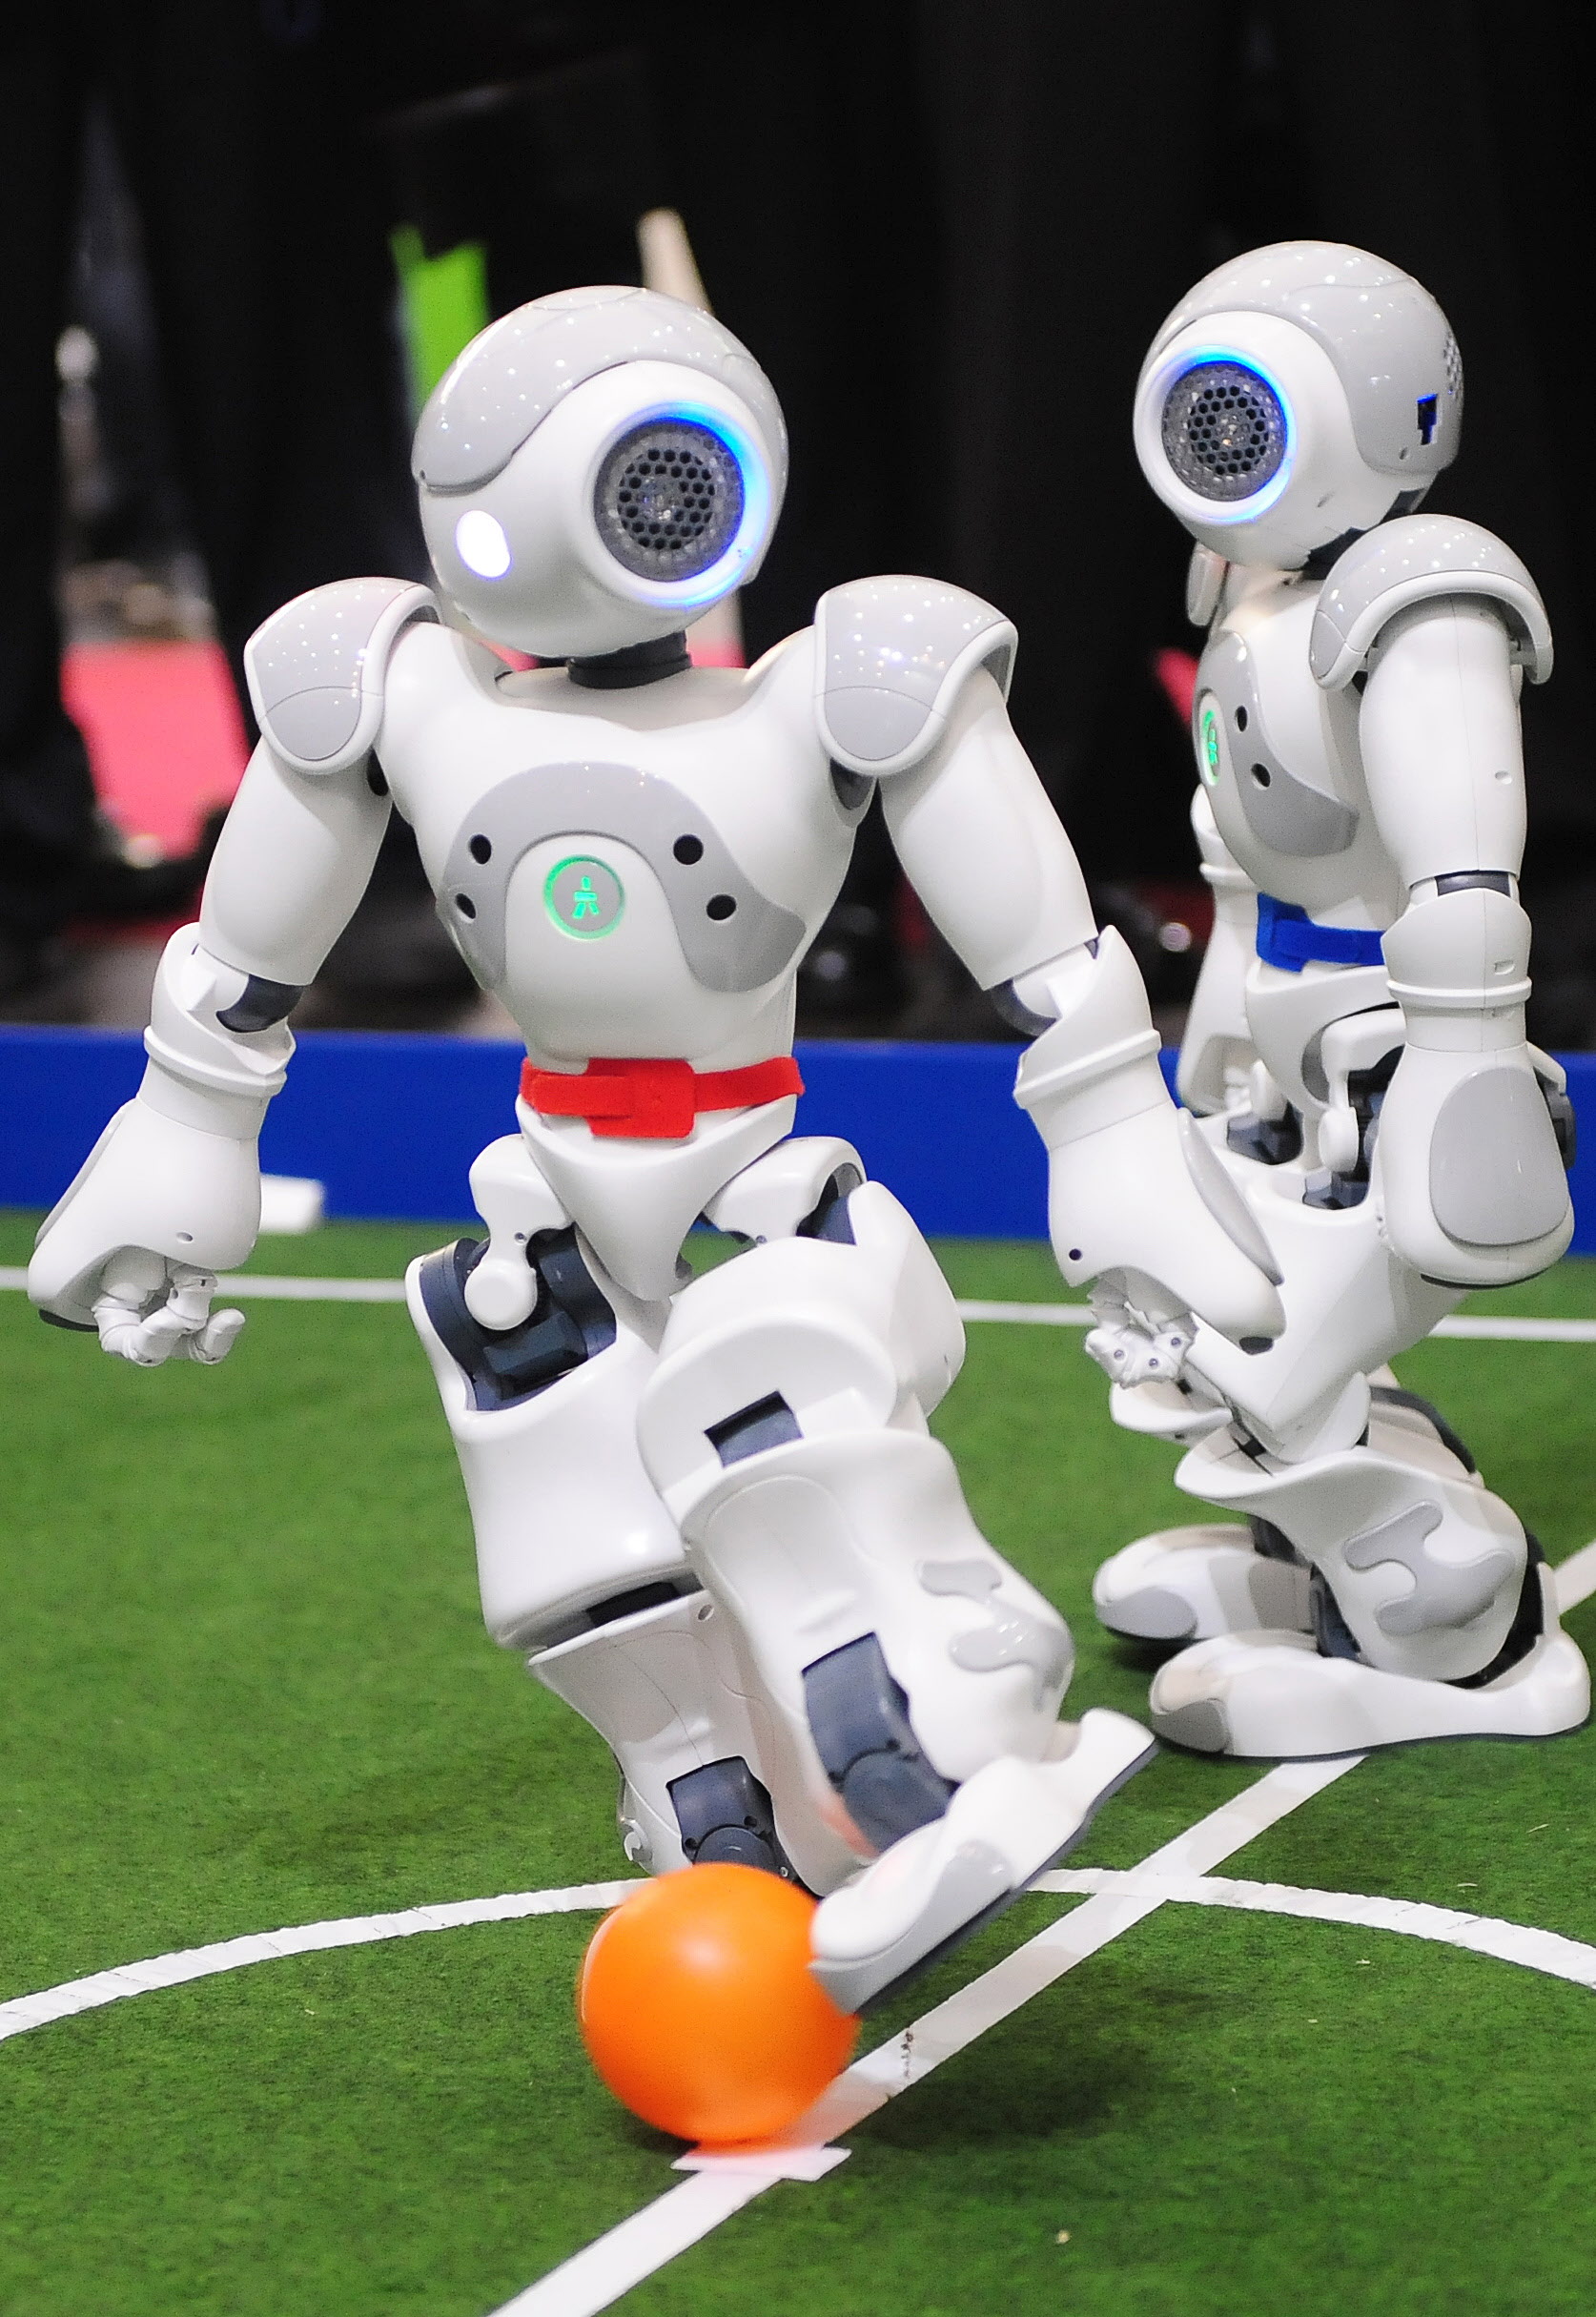 3月2日在德國漢諾威舉辦的電腦展（CeBIT）中，出場表演的「足球機器人」技驚四座。